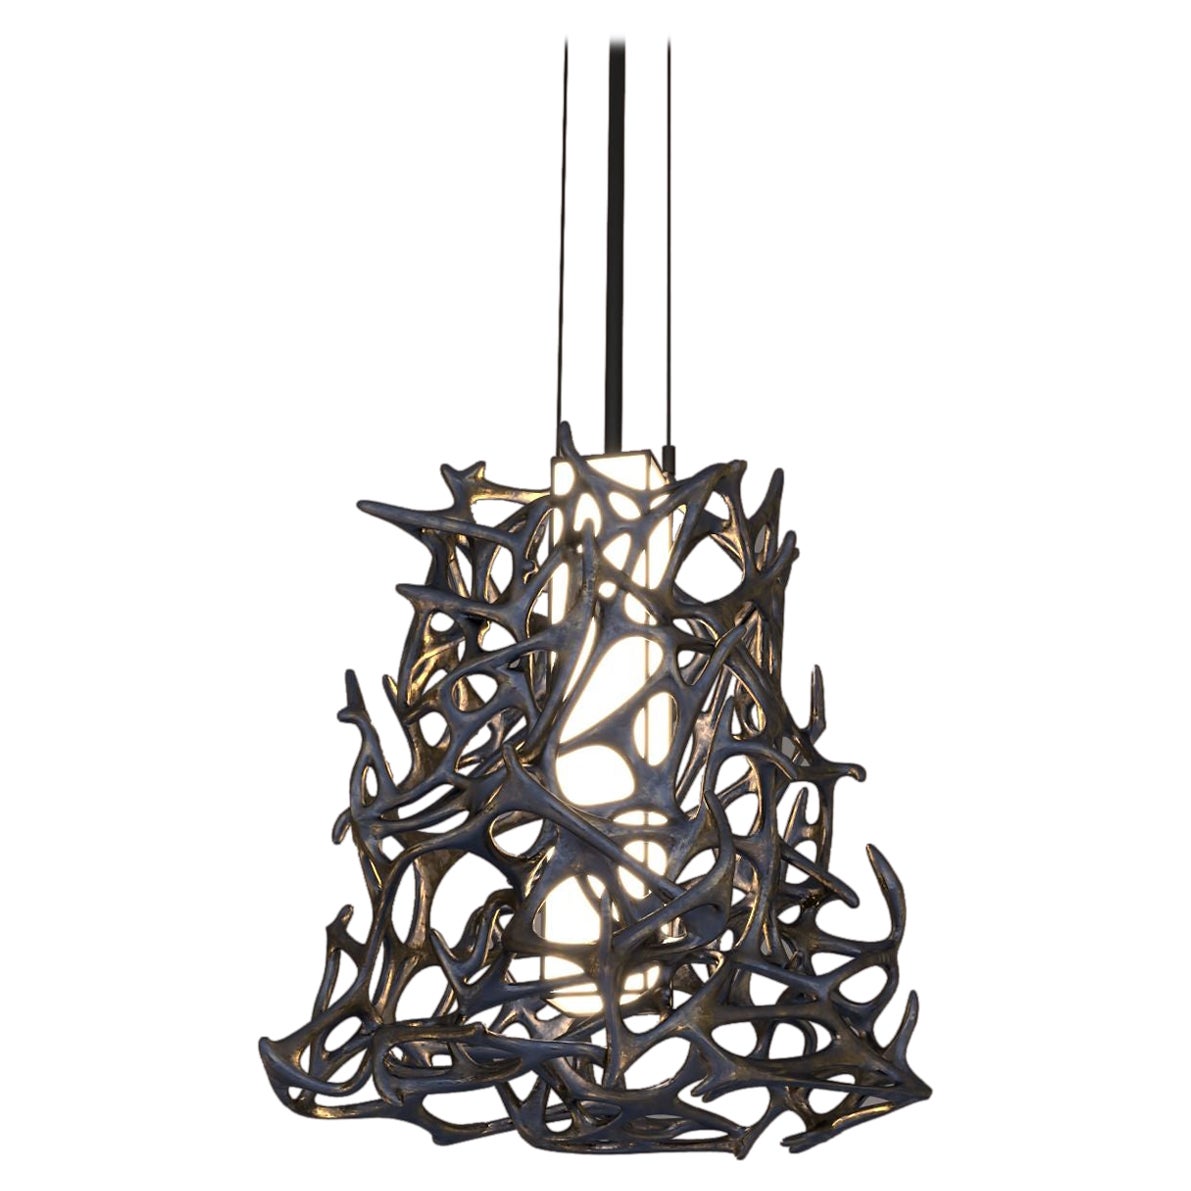 Morphogen Pendant Lamp by John Brevard For Sale